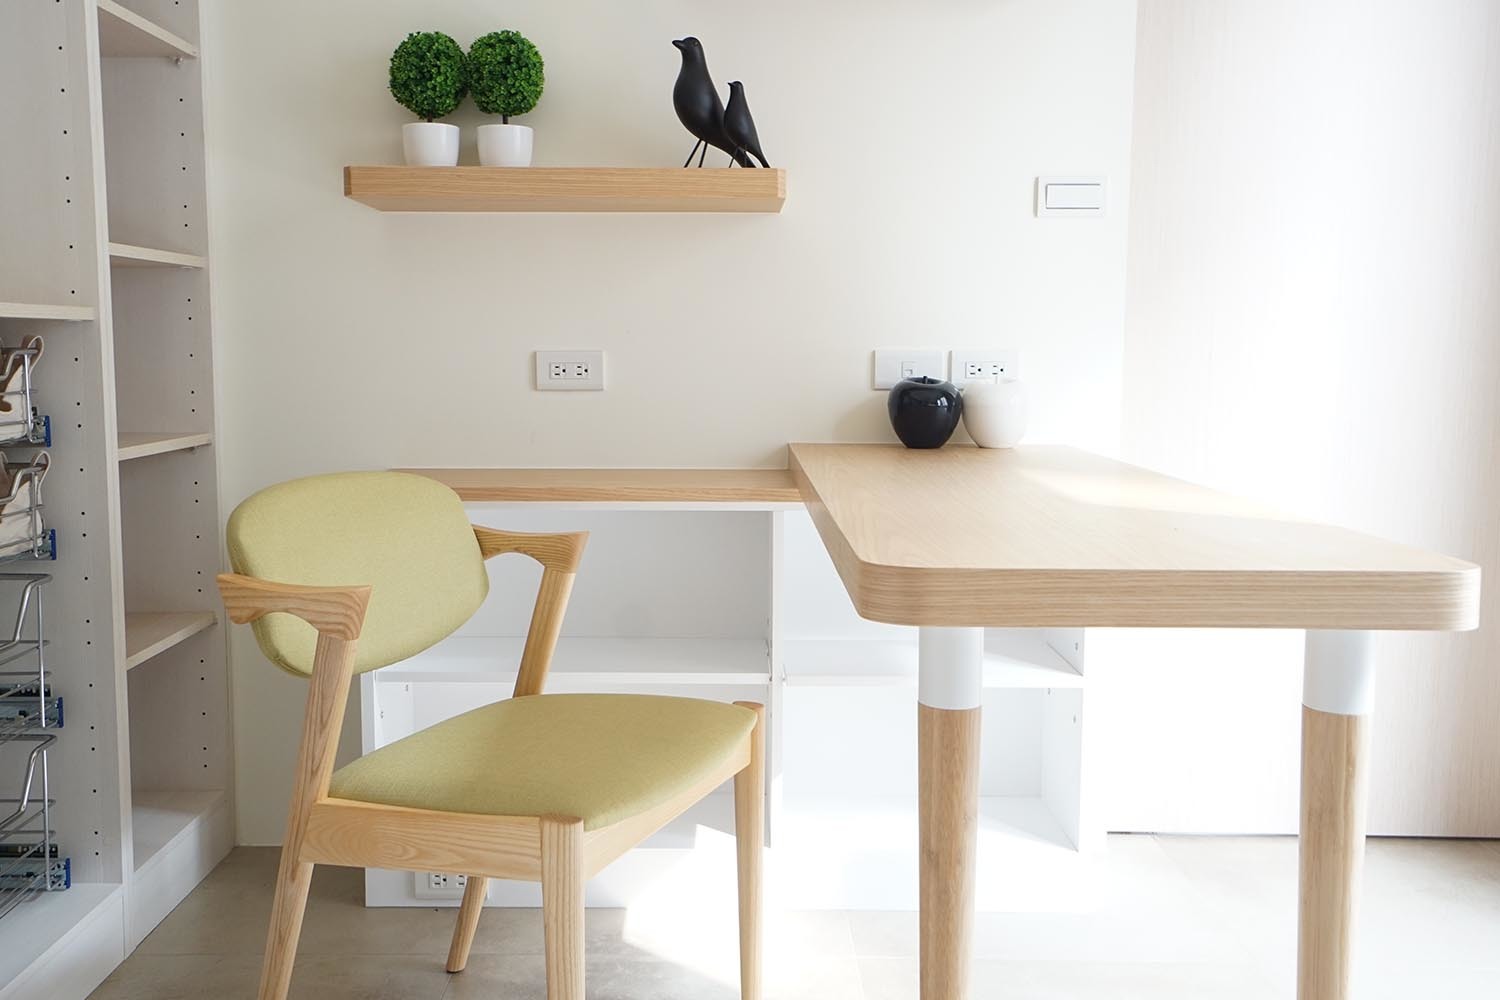 客製化書桌、實木餐椅